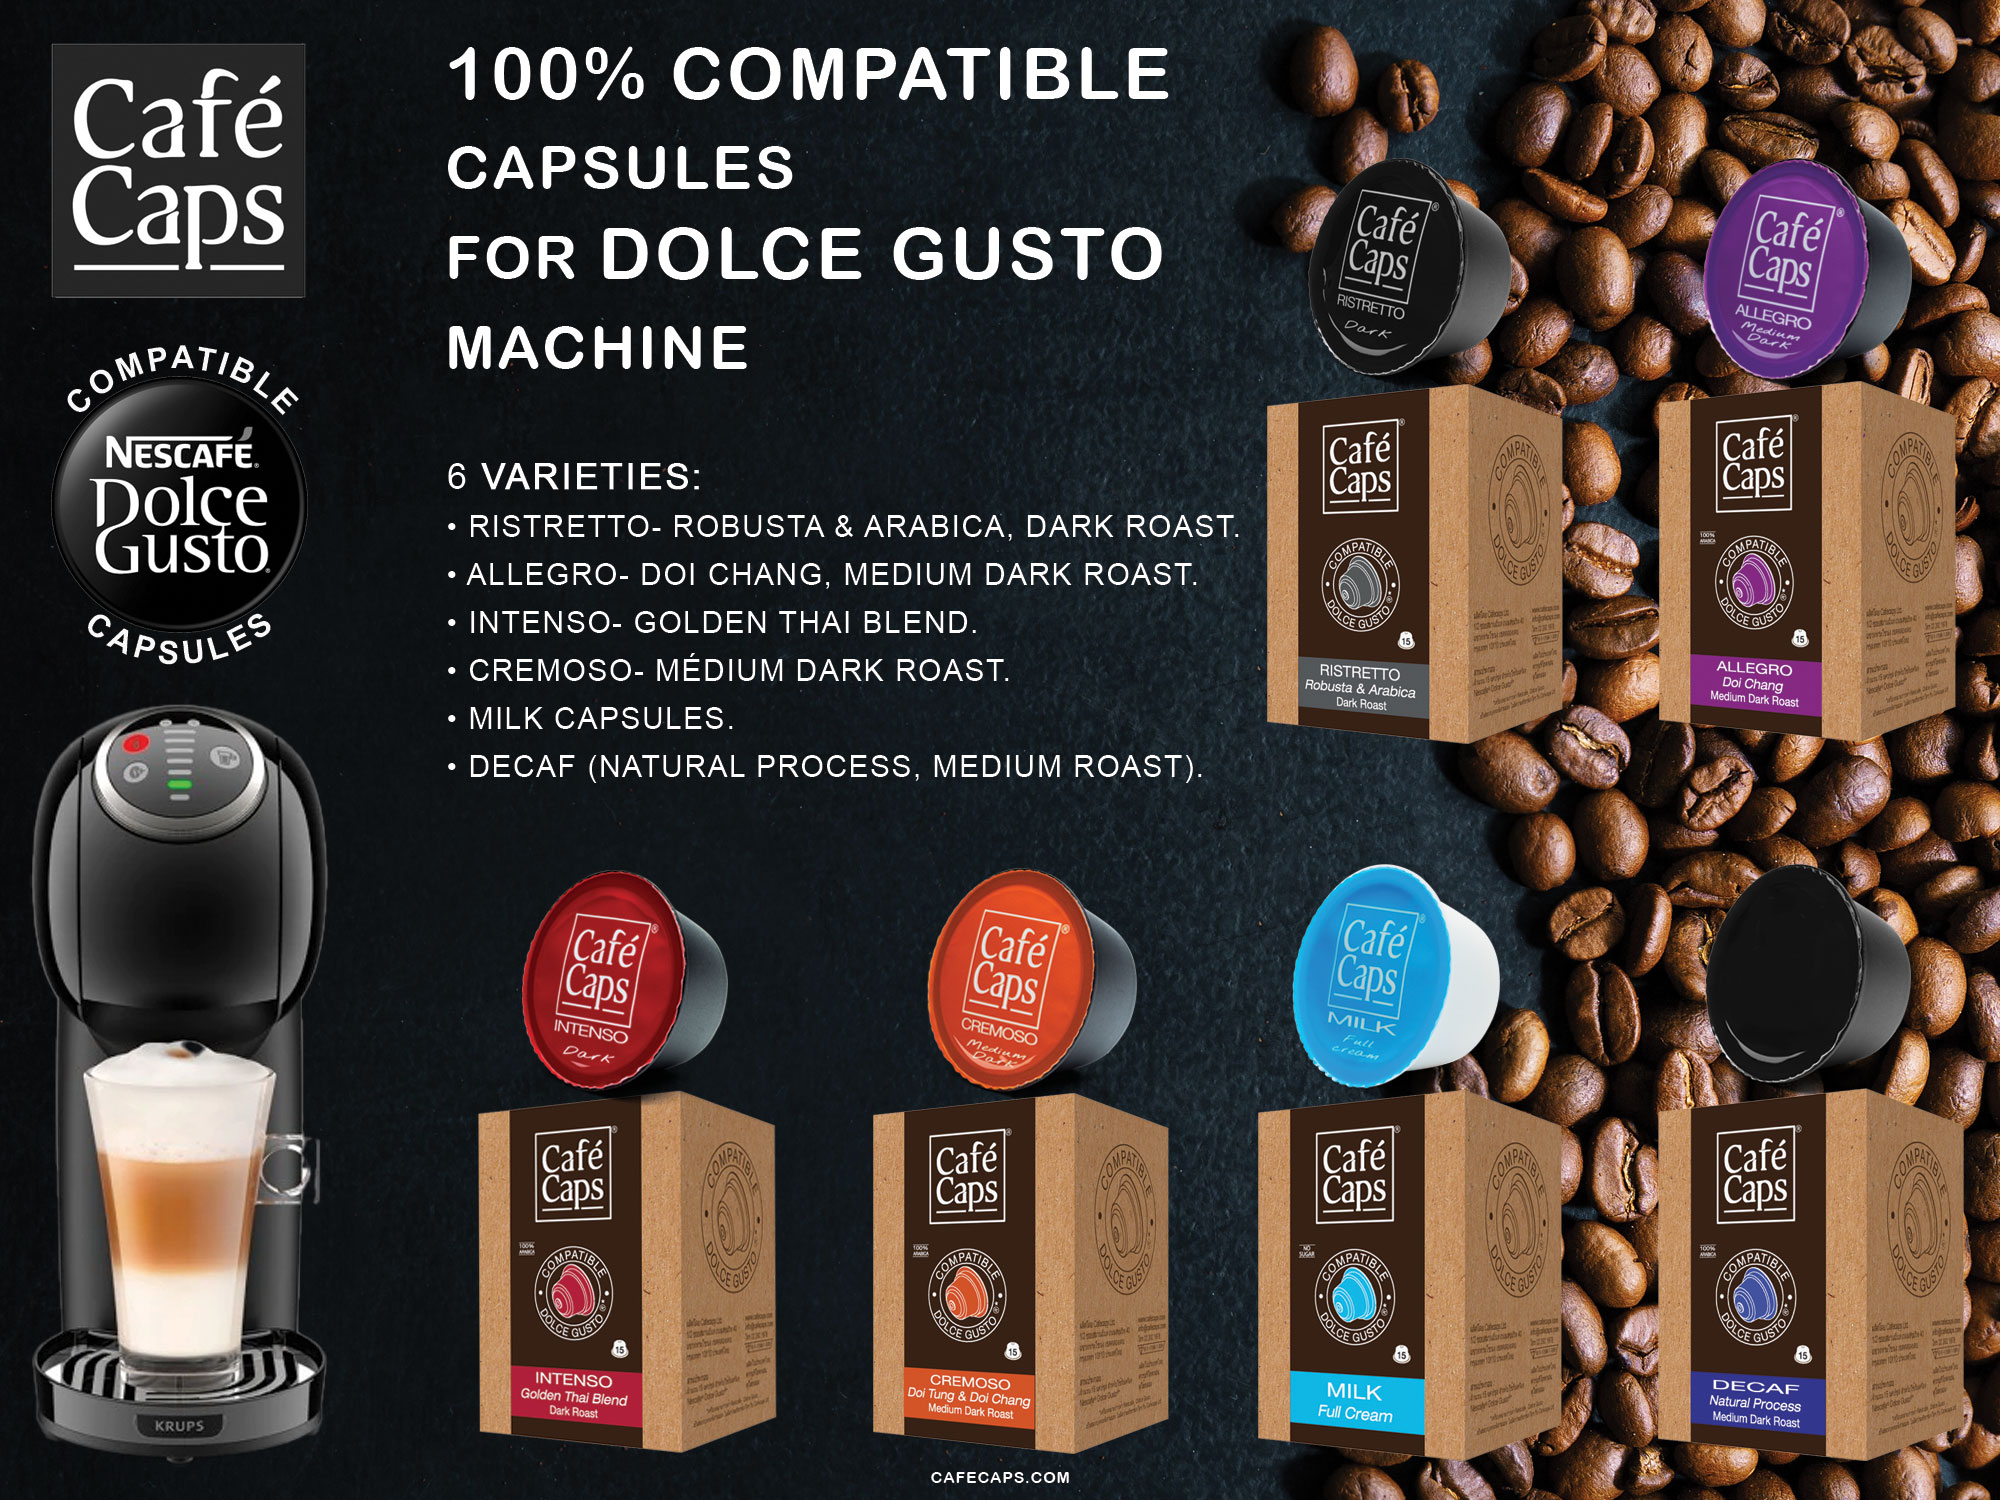 ภาพอธิบายเพิ่มเติมของ Cafecaps - Coffee Dolce Gusto MIX Compatible capsules of Milk (2 Box X15 แคปซูล) & Cremoso (2 กล่อง X15 แคปซูล) รวม 60 แคปซูล - Dolce Gusto Coffee capsule compatible แคปซูลกาแฟที่ กาแฟสไตล์อิตาเลียนทั่วไป ส่วนผสมของโรบัสต้าและอาราบิก้า